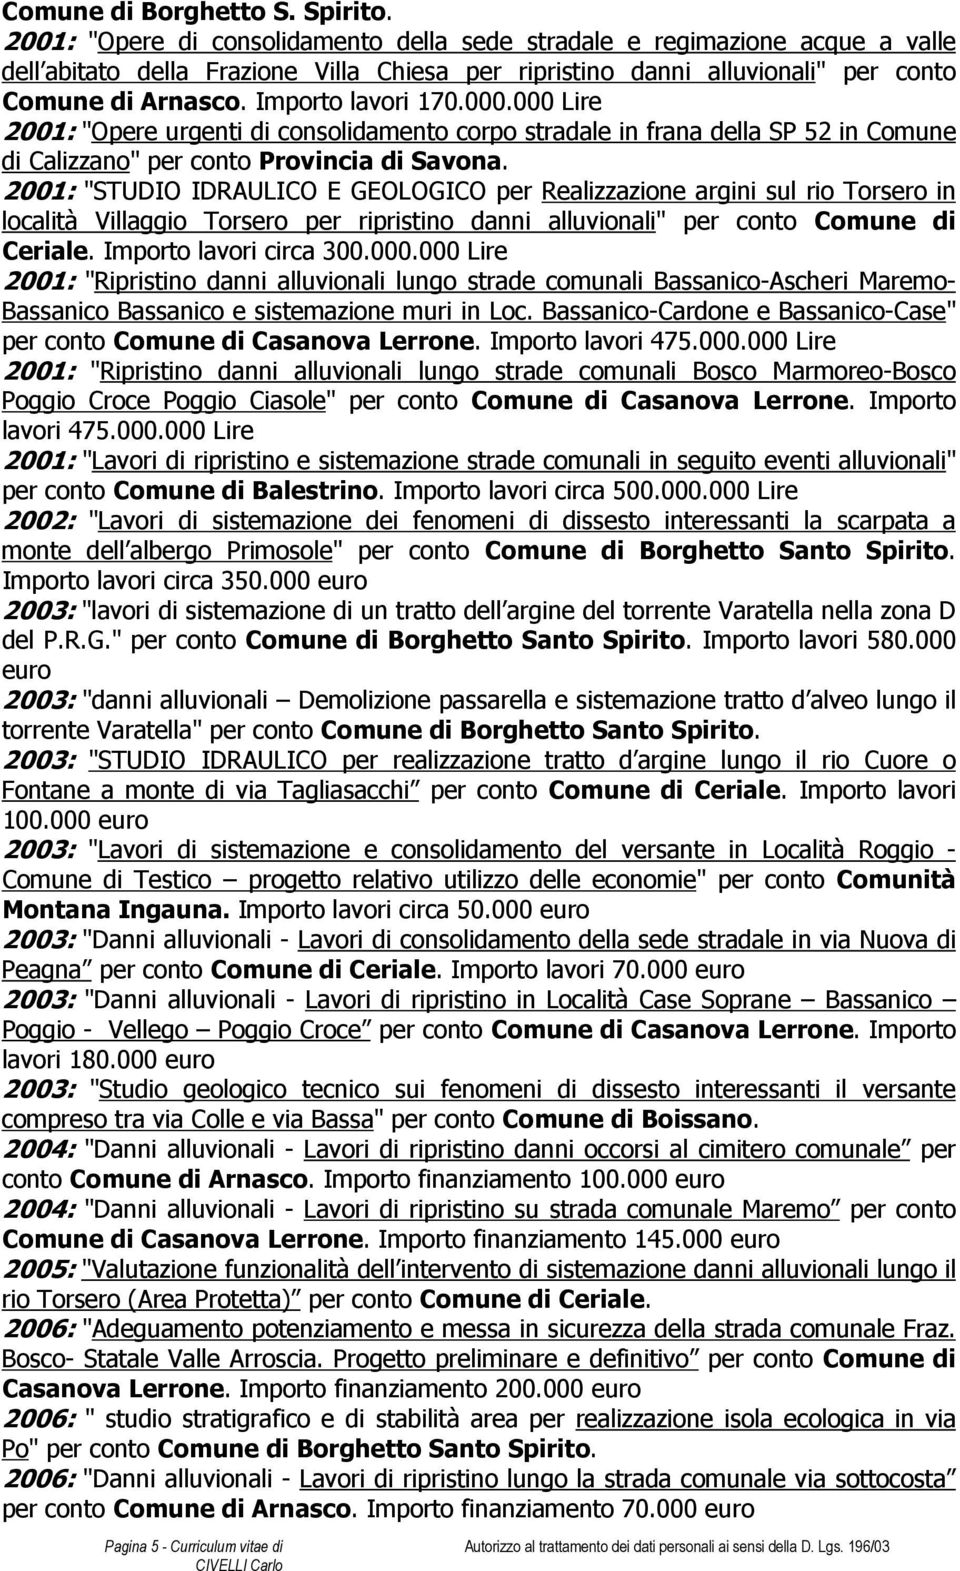 Importo lavori 170.000.000 Lire 2001: "Opere urgenti di consolidamento corpo stradale in frana della SP 52 in Comune di Calizzano" per conto Provincia di Savona.